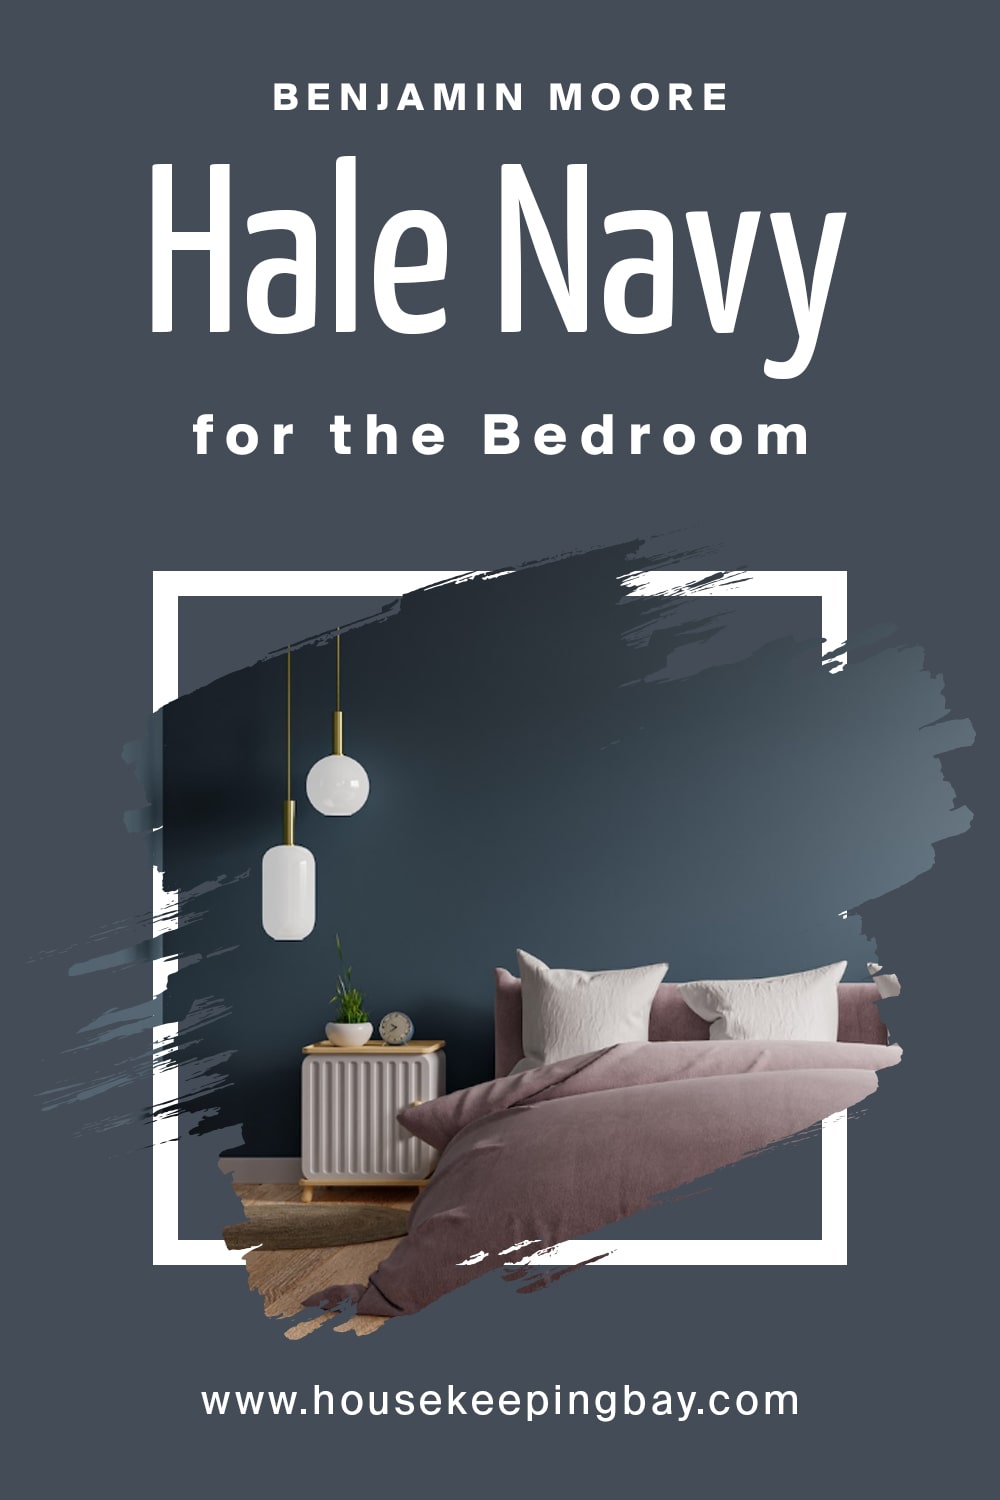 Benjamin Moore. Hale Navy For the bedroom